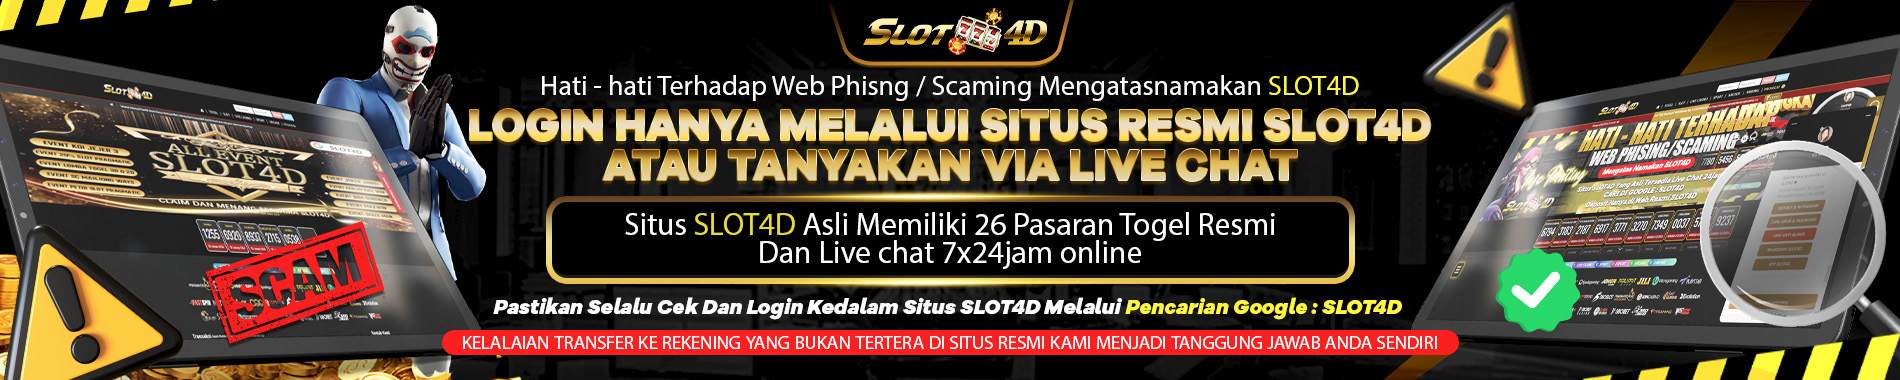 pemberitahuan web phising/scaming slot4d